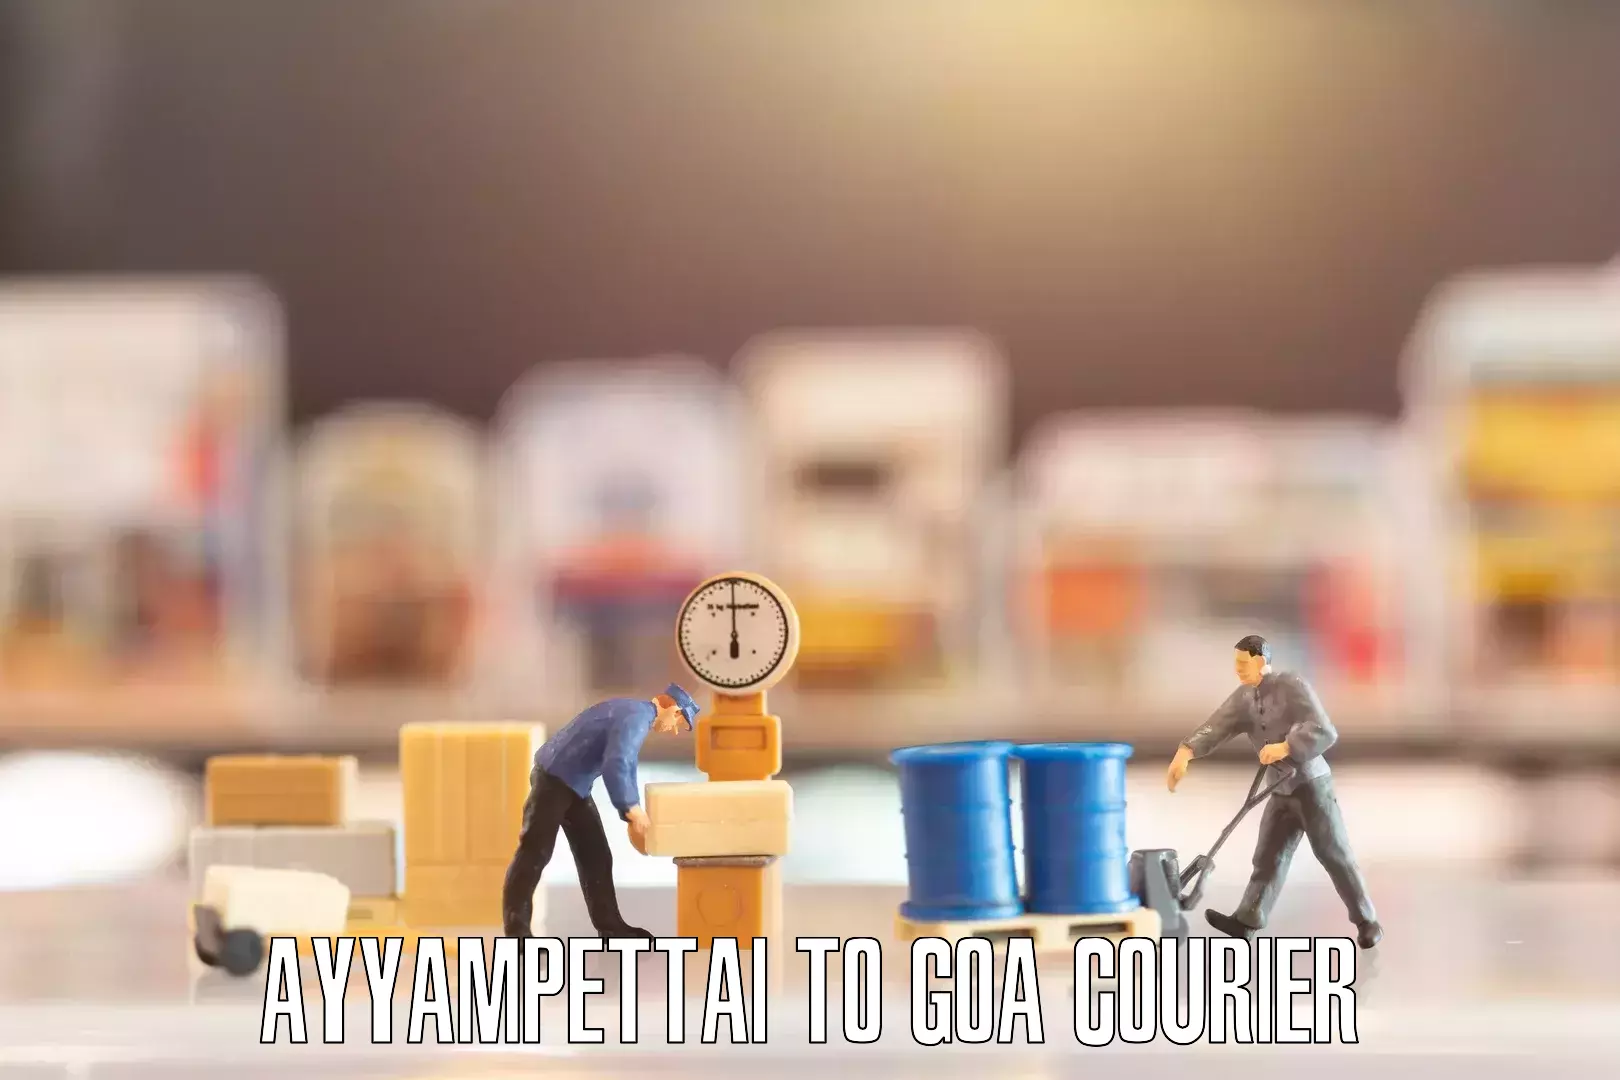 Professional movers Ayyampettai to Goa